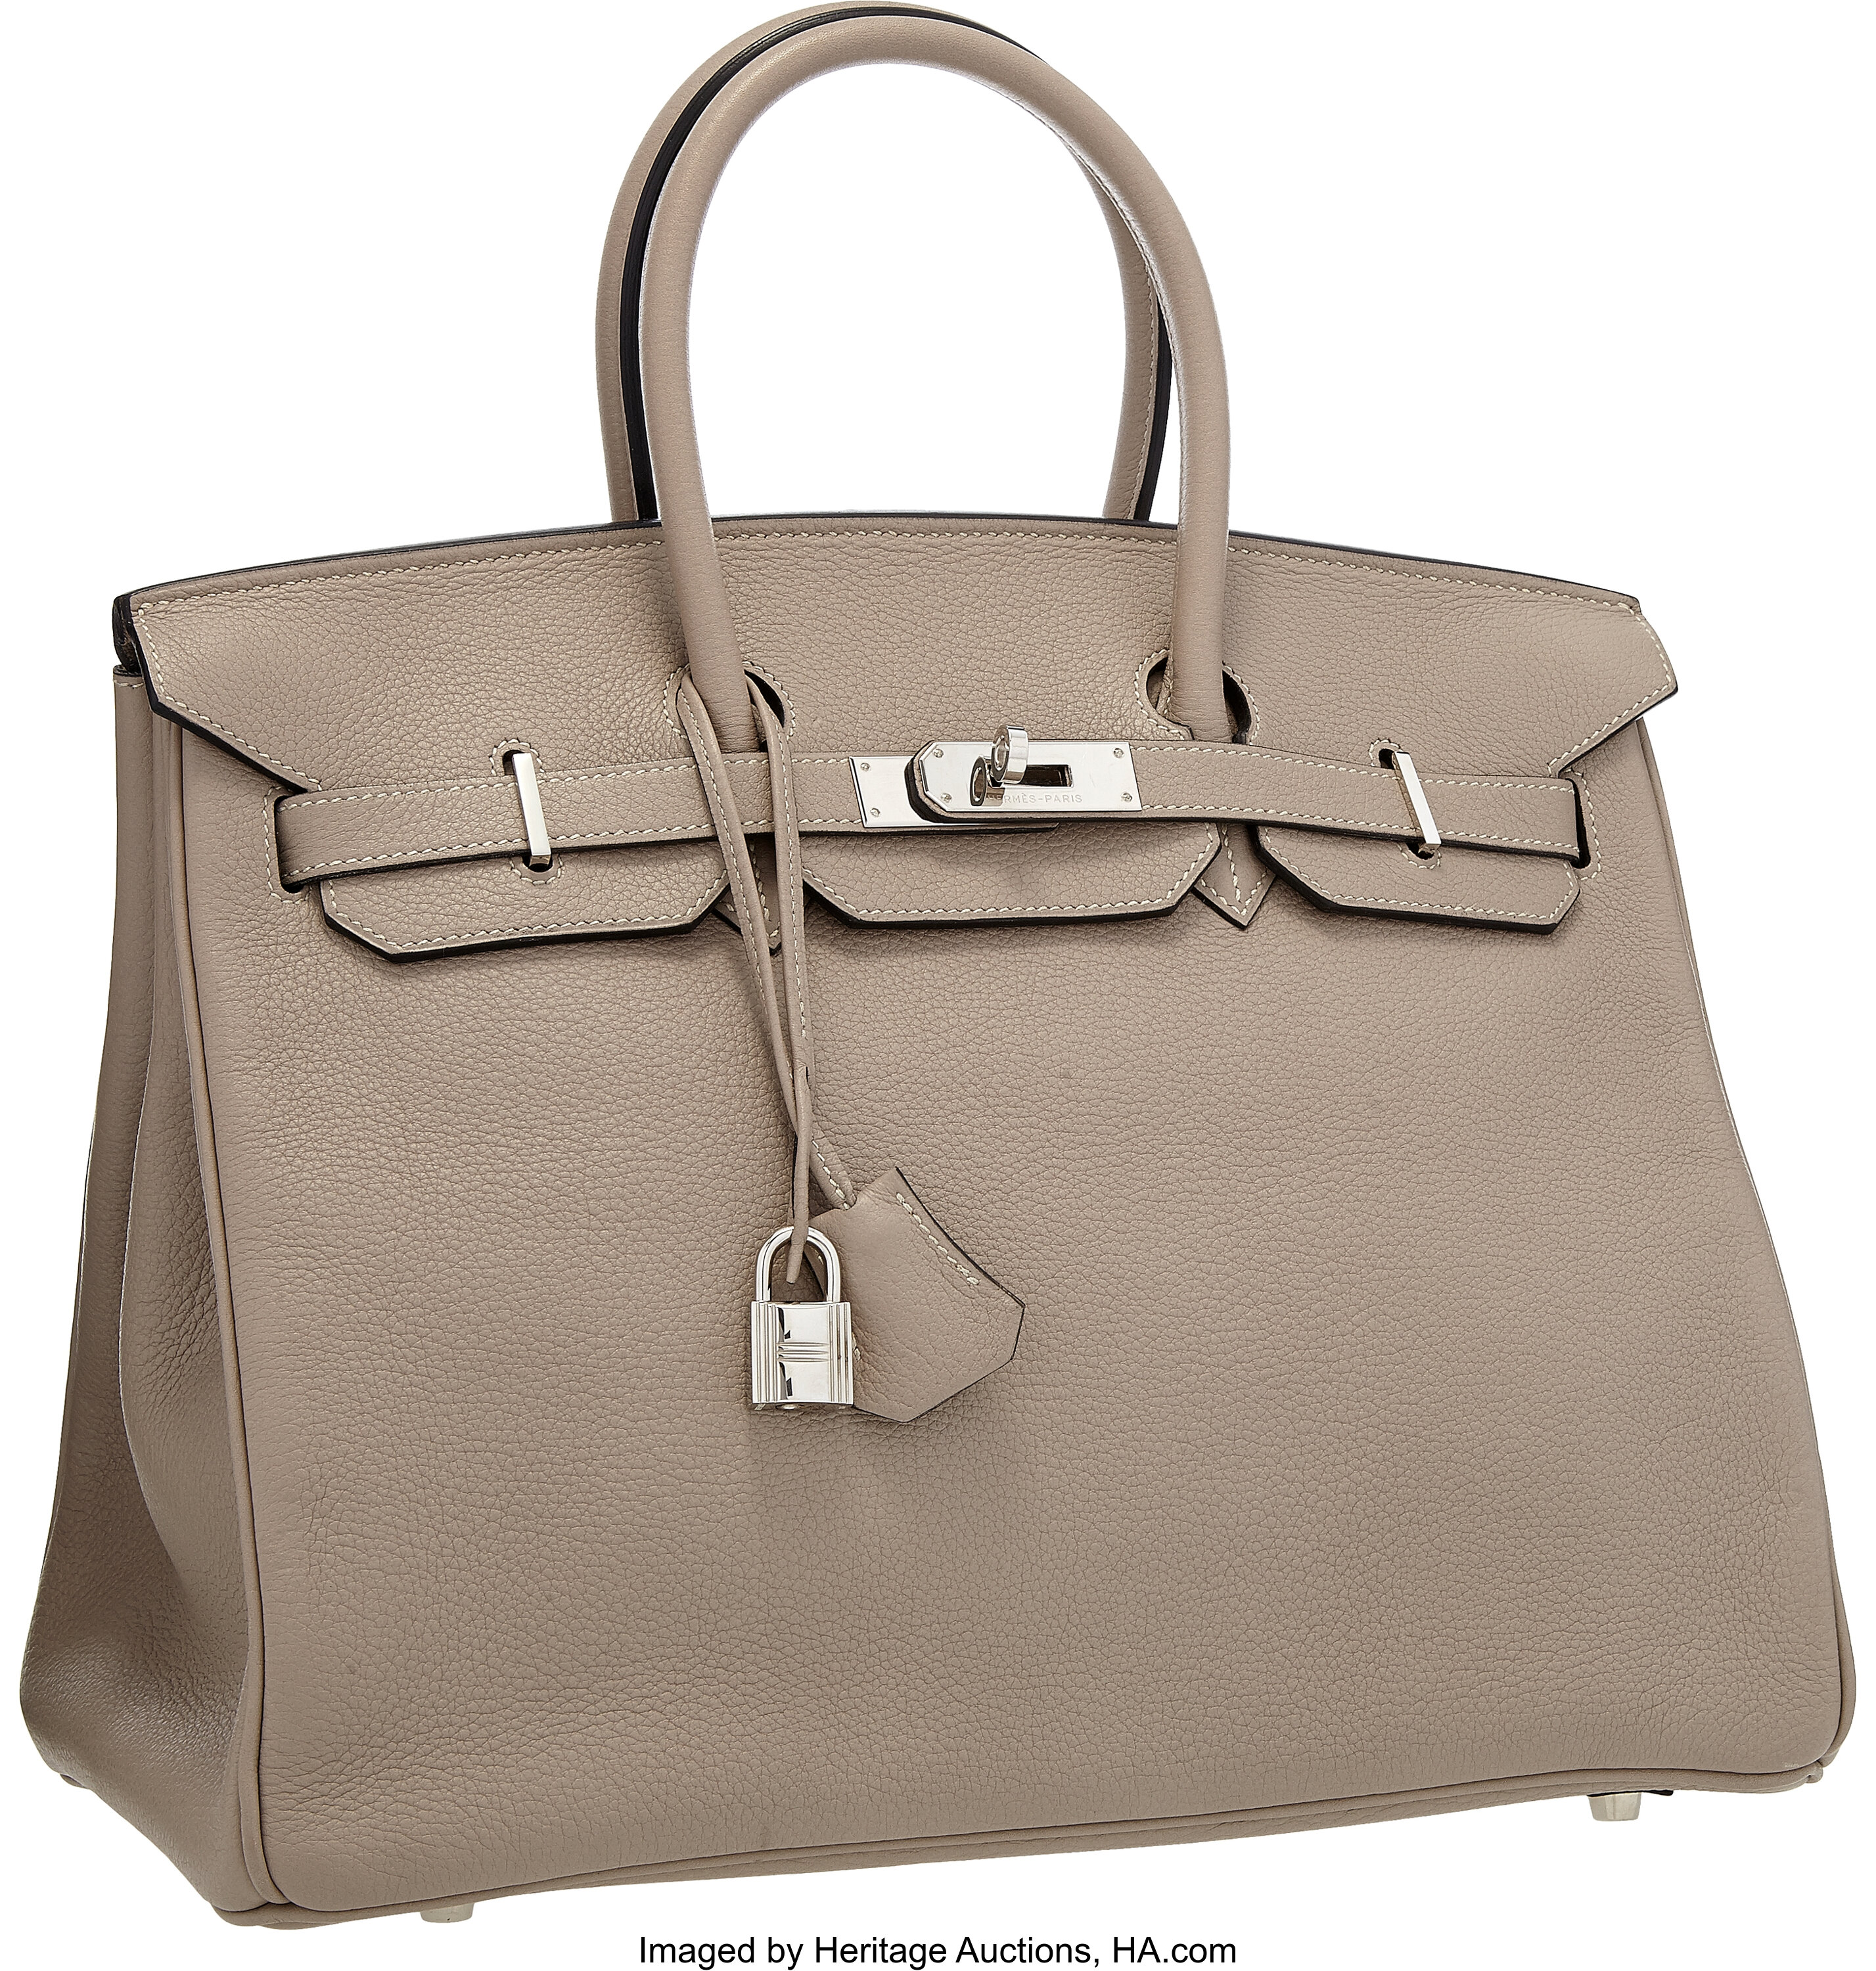 Sold at Auction: Hermes 35cm Tri-Color Togo Leather Birkin Bag W/Clochette,  Lock/Keys, & Dust Bag